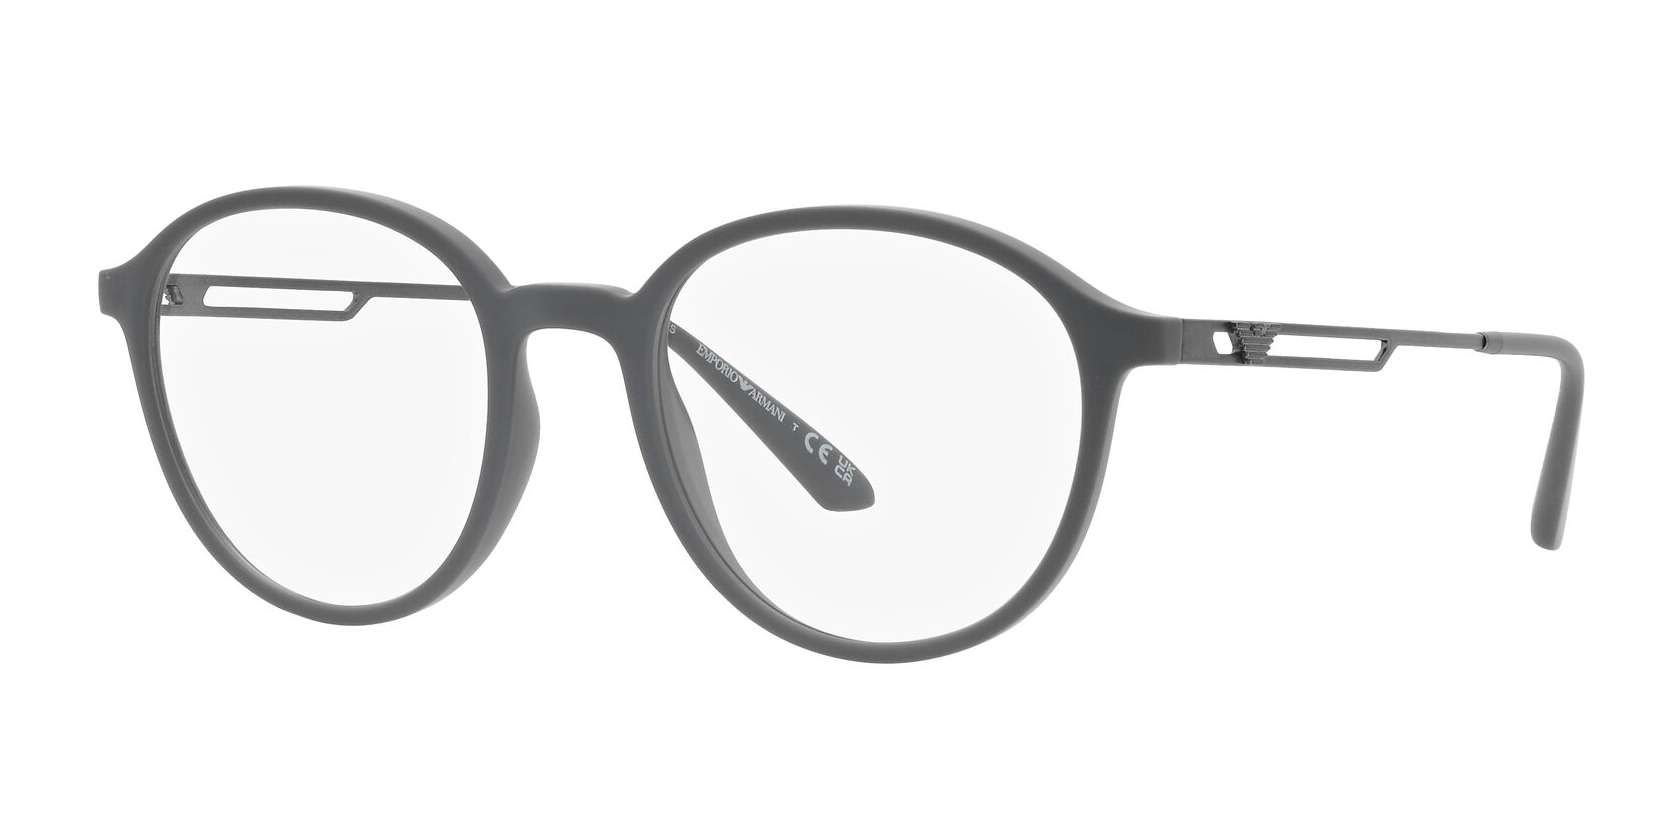 Armani briller - ea3225 fra Emporio Armani - Grå - Plast | Metall - oval - Large